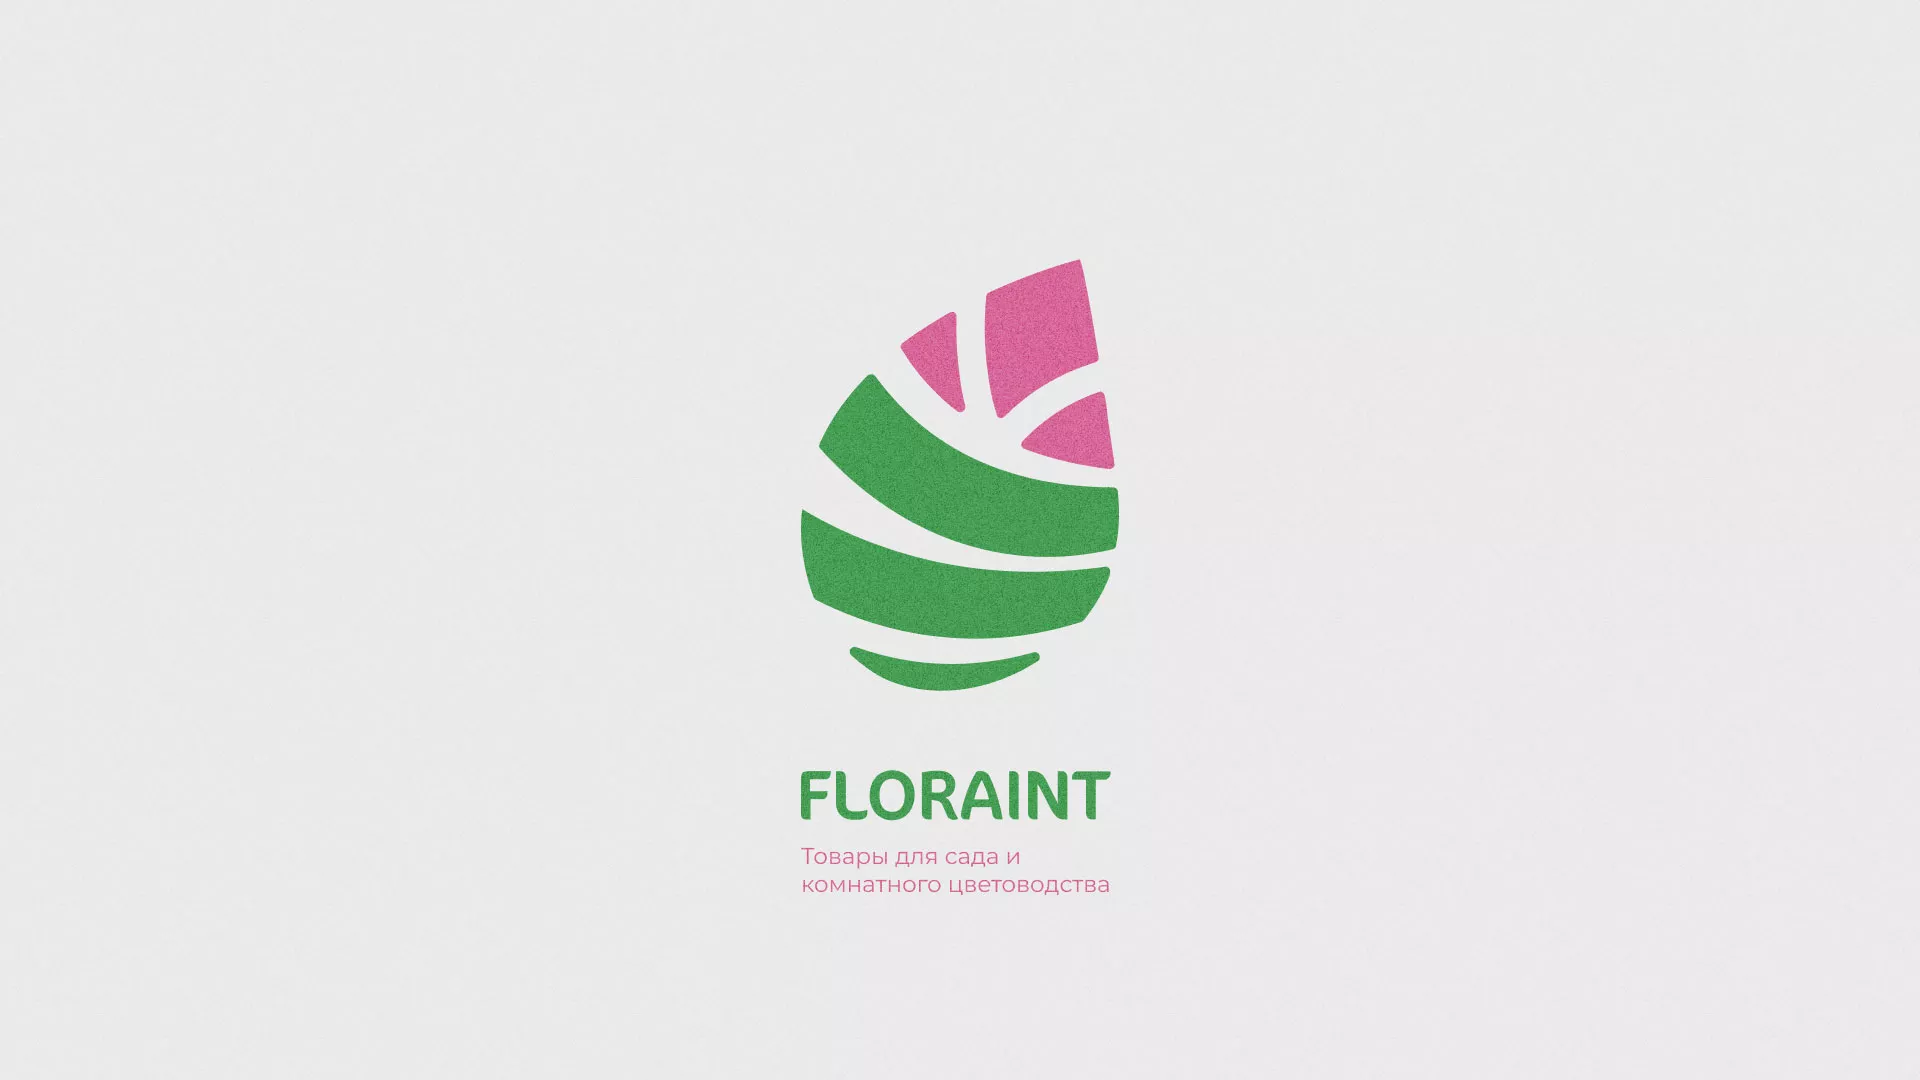 Разработка оформления профиля Instagram для магазина «Floraint» в Демидове